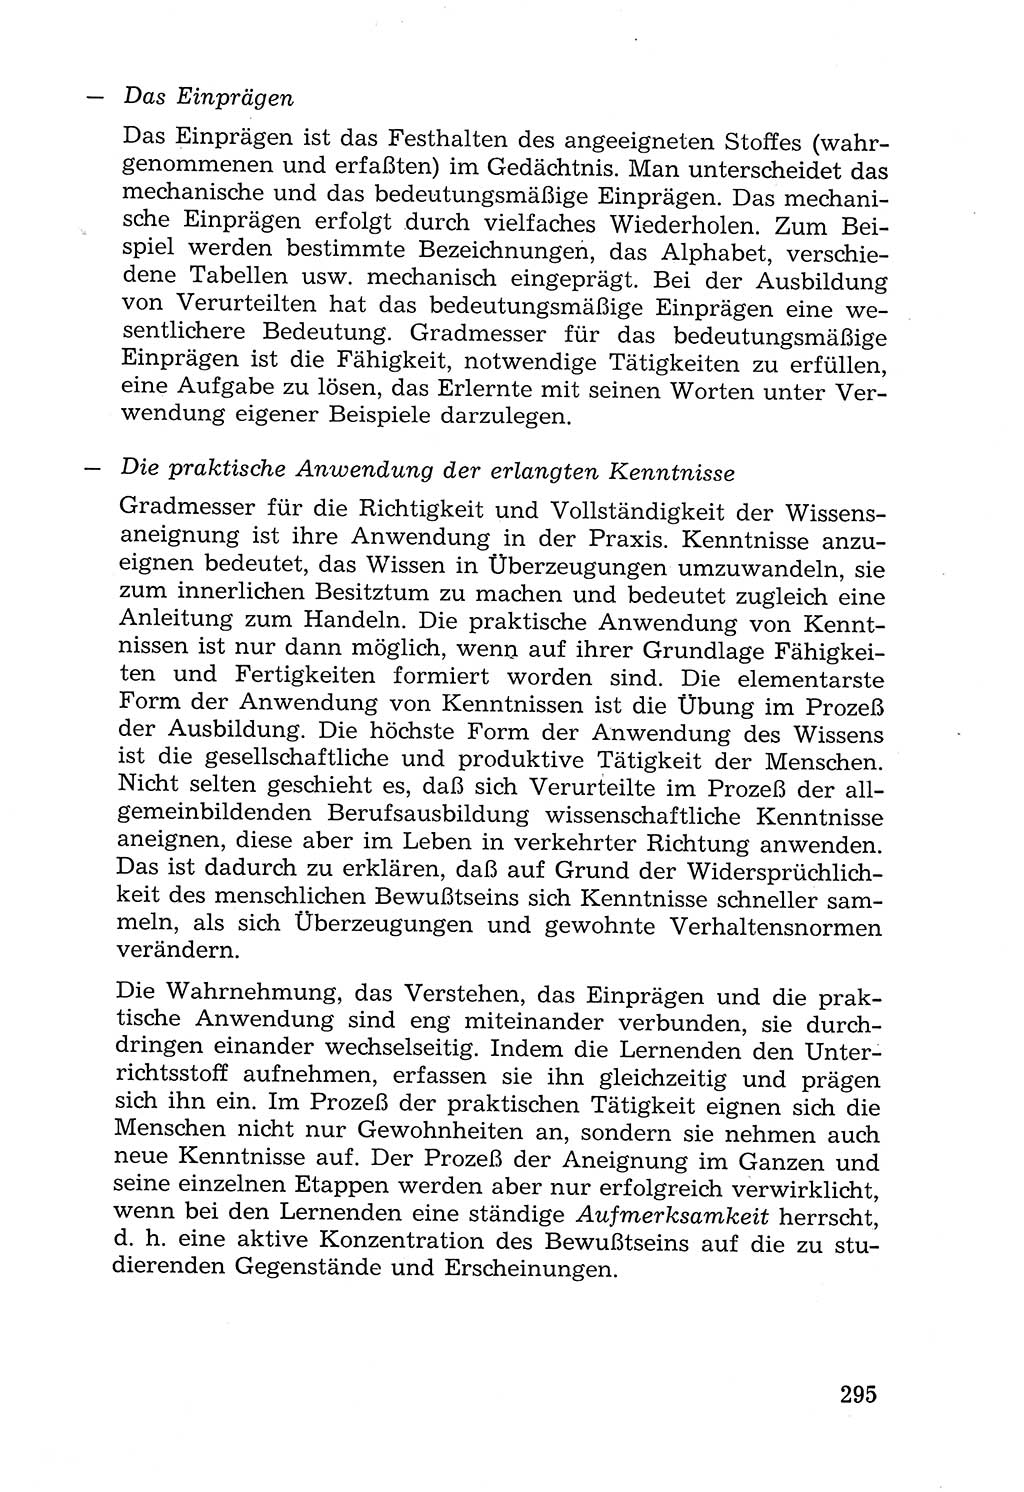 Lehrbuch der Strafvollzugspädagogik [Deutsche Demokratische Republik (DDR)] 1969, Seite 295 (Lb. SV-Pd. DDR 1969, S. 295)